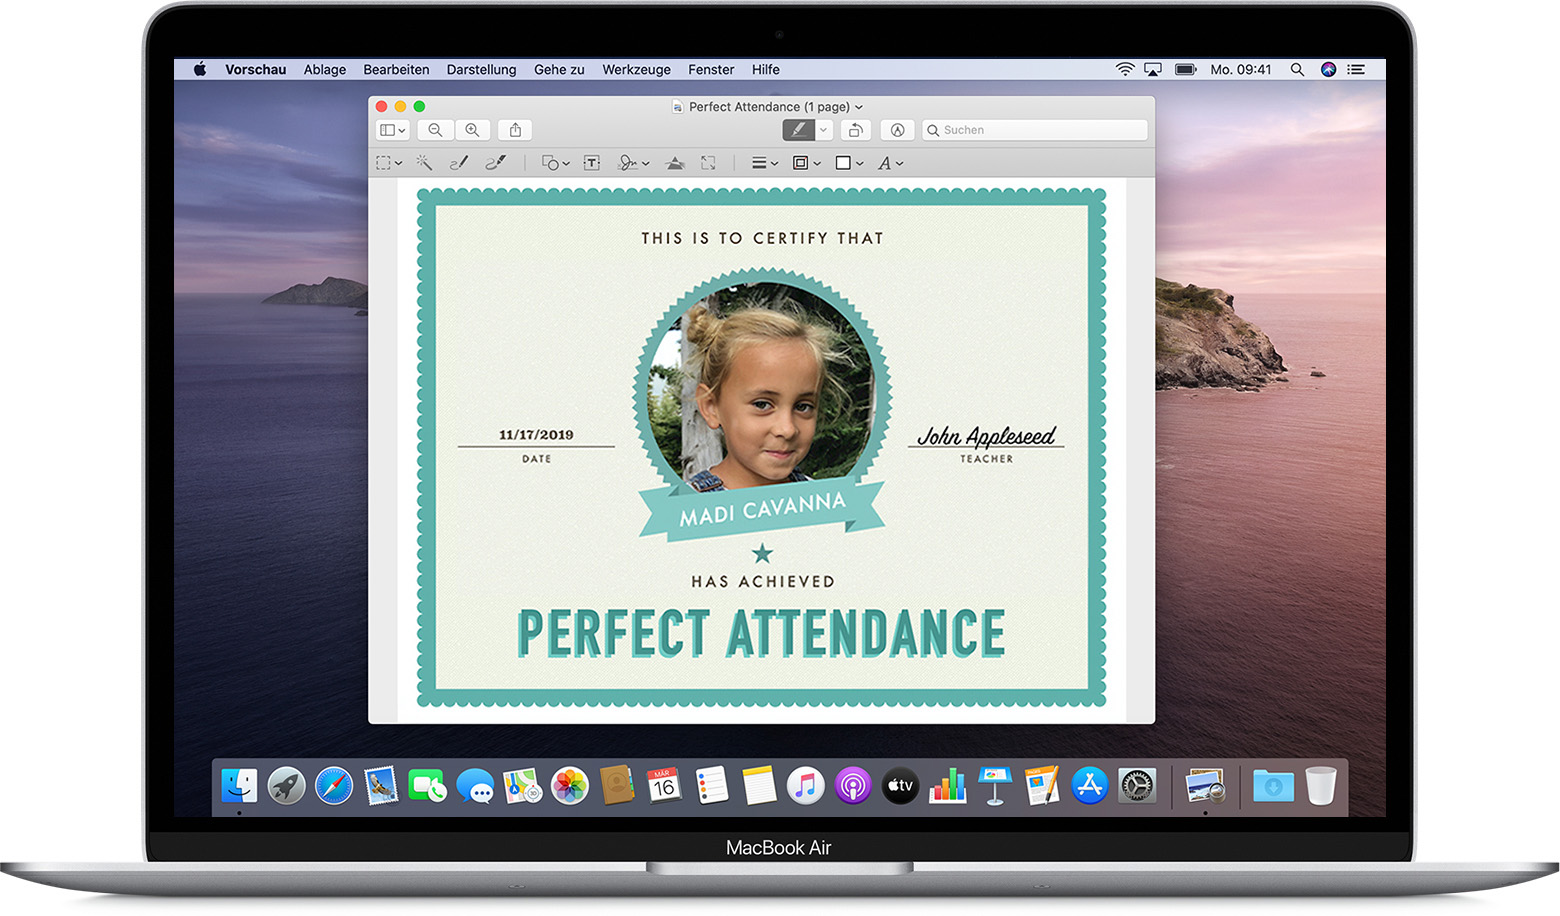 Fotos Und Pdfs Mit Der Vorschau App Auf Deinem Mac Bearbeiten Apple Support